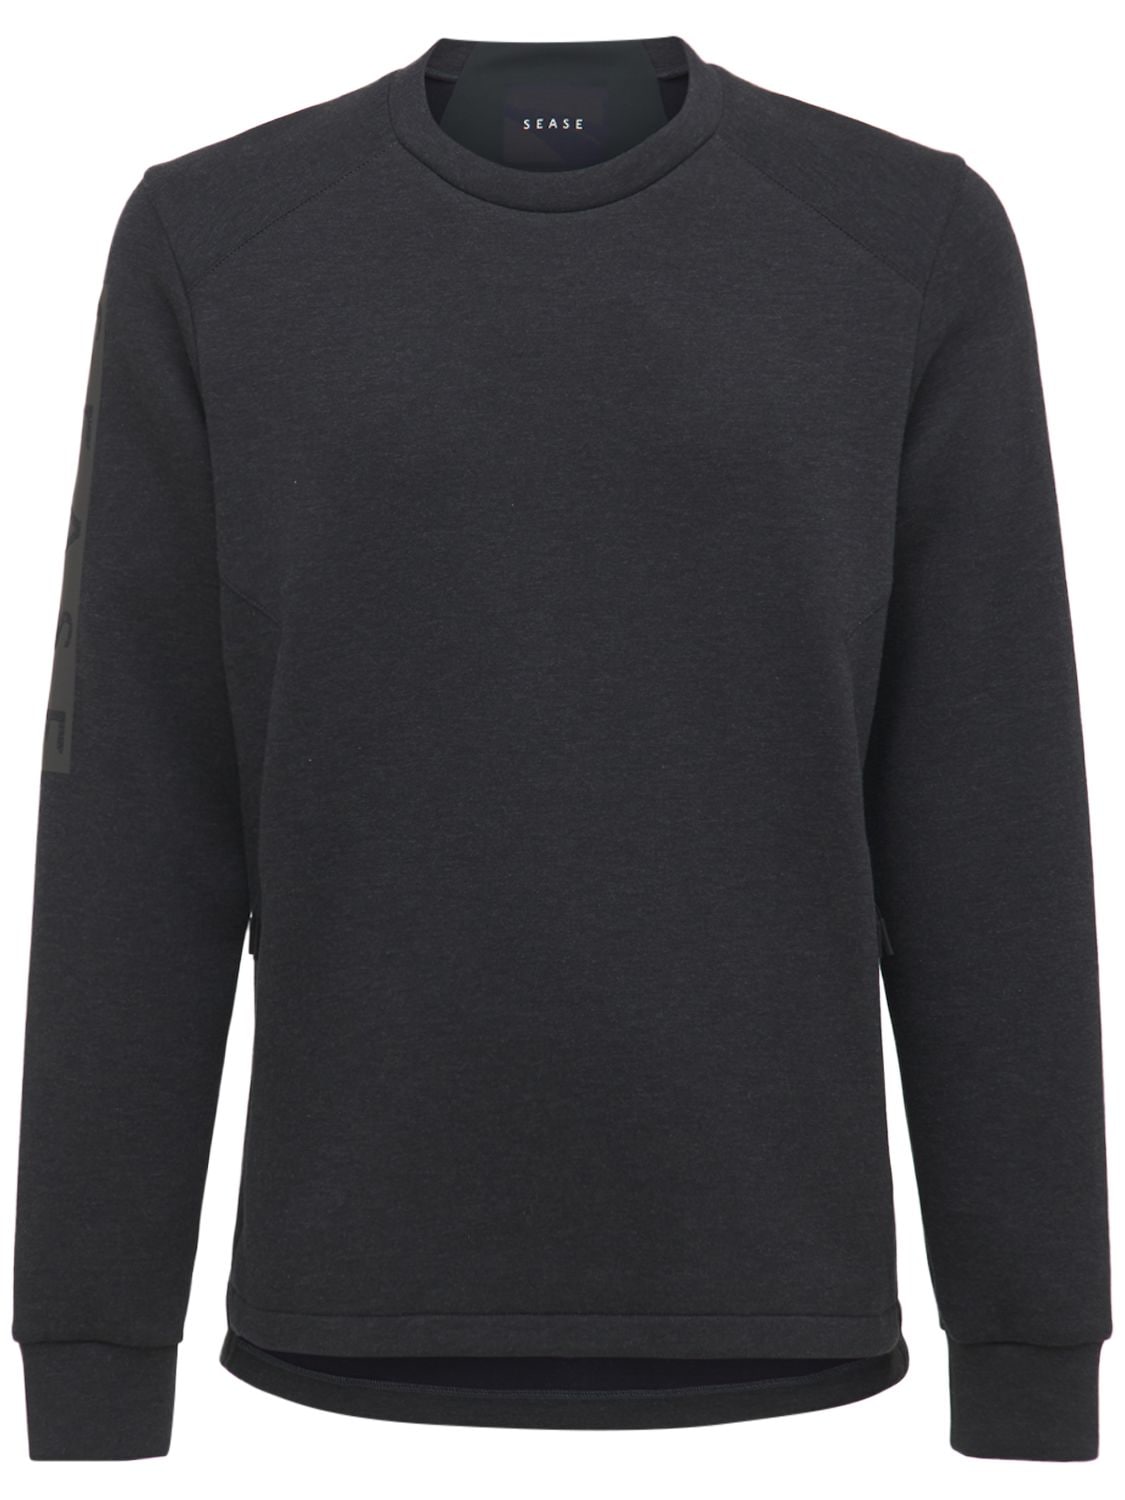 Sease - Cotton & nylon scuba jersey sweatshirt - | Luisaviaroma